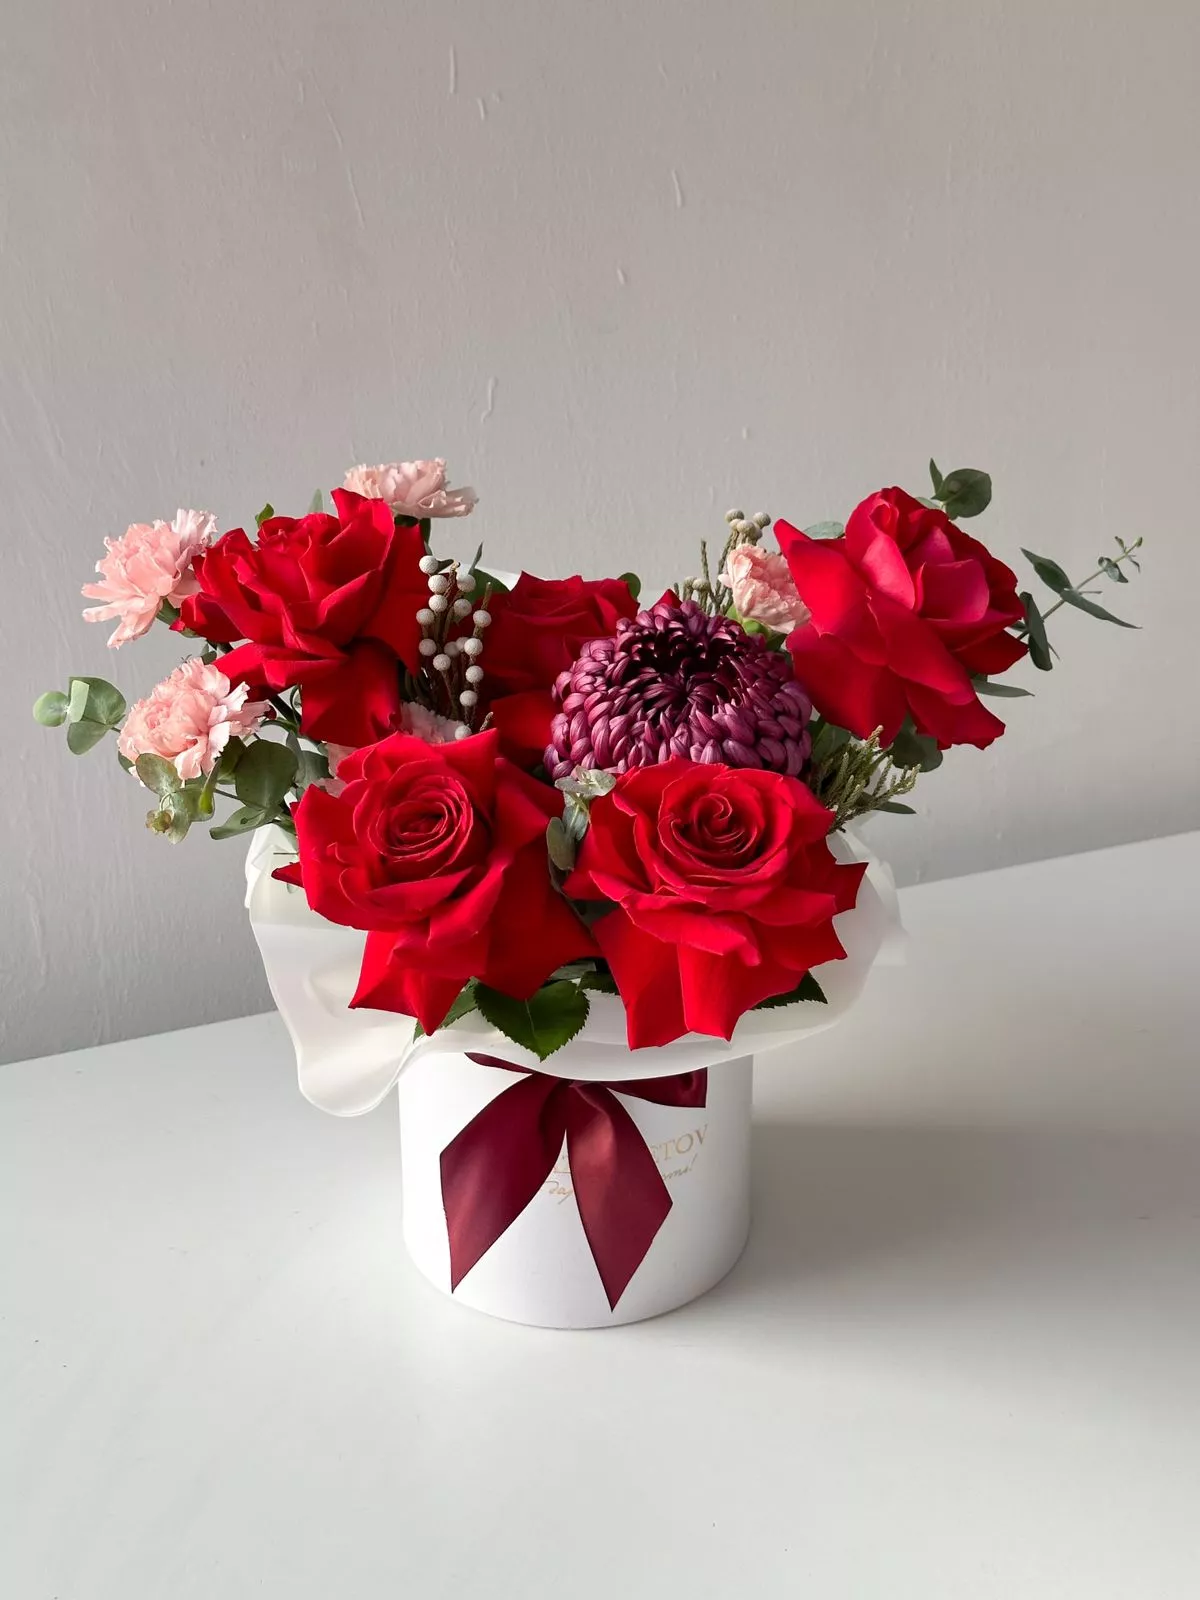 Композиция "Ember Elegance" из роз, гвоздик, хризантем и брунии